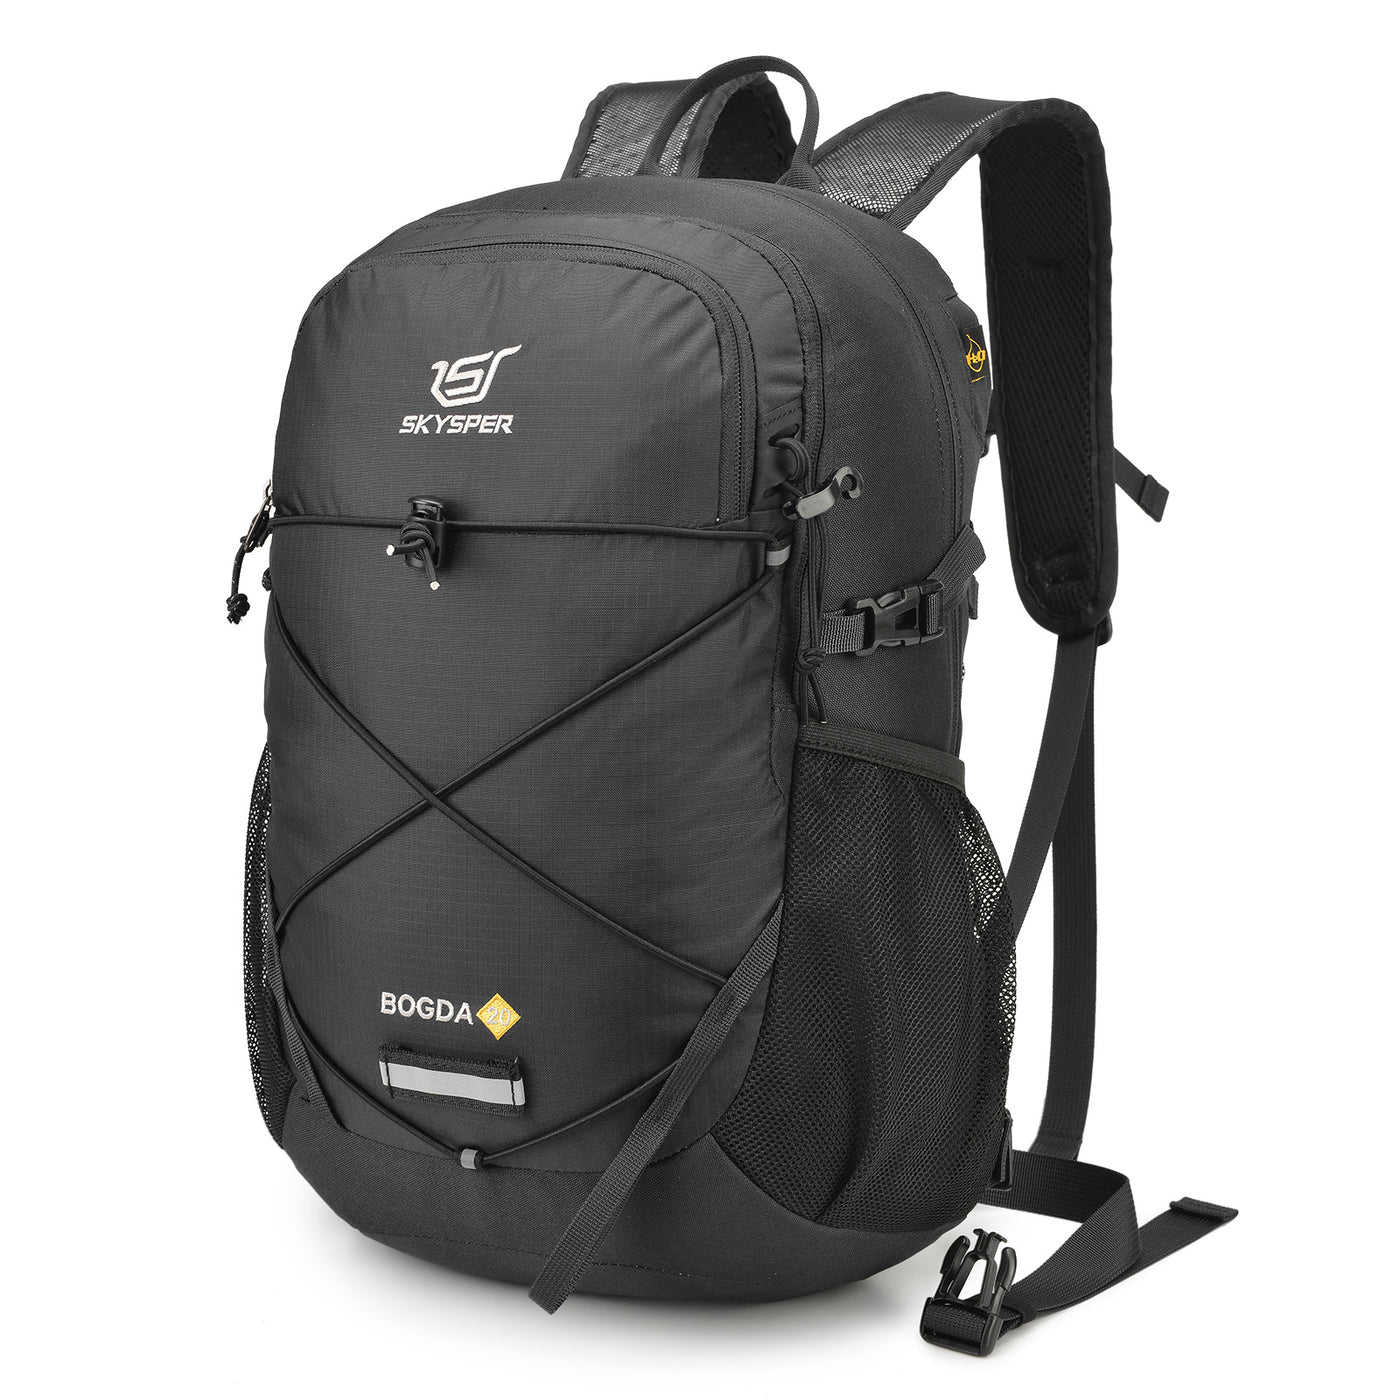 BOGDA20 - SKYSPER 20L Small Hiking Backpack Daypack